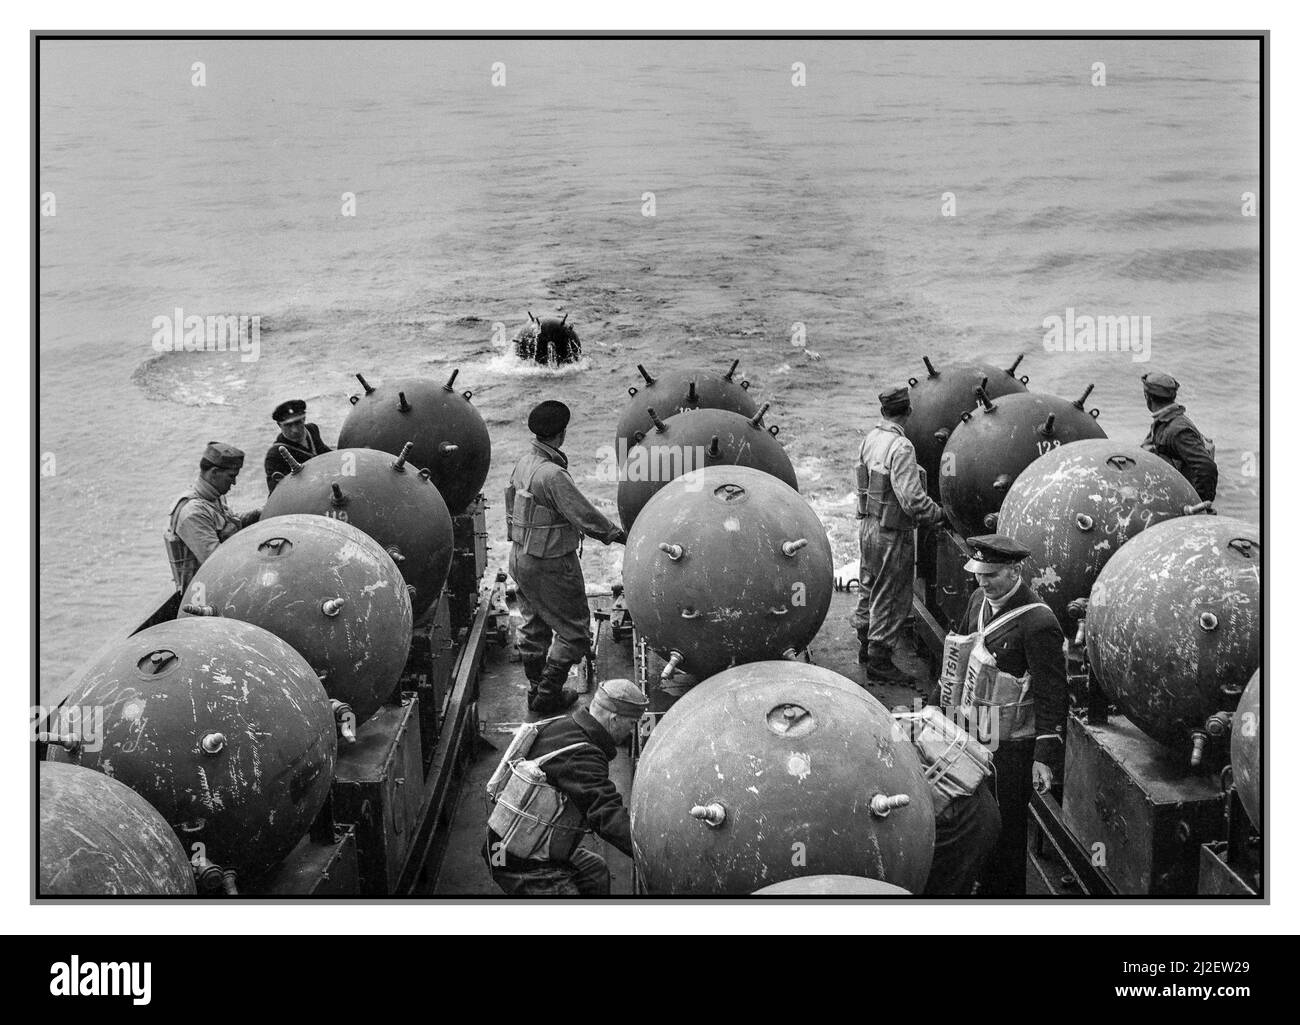 Fortsetzung Krieg Finnland WW2 Verlegen von Meeresminen gegen sowjetische russische U-Boote im südfinnischen Archipeligo an Bord des finnischen Minenräumers Ruotsinsalmi 18. Mai 1942 Stockfoto